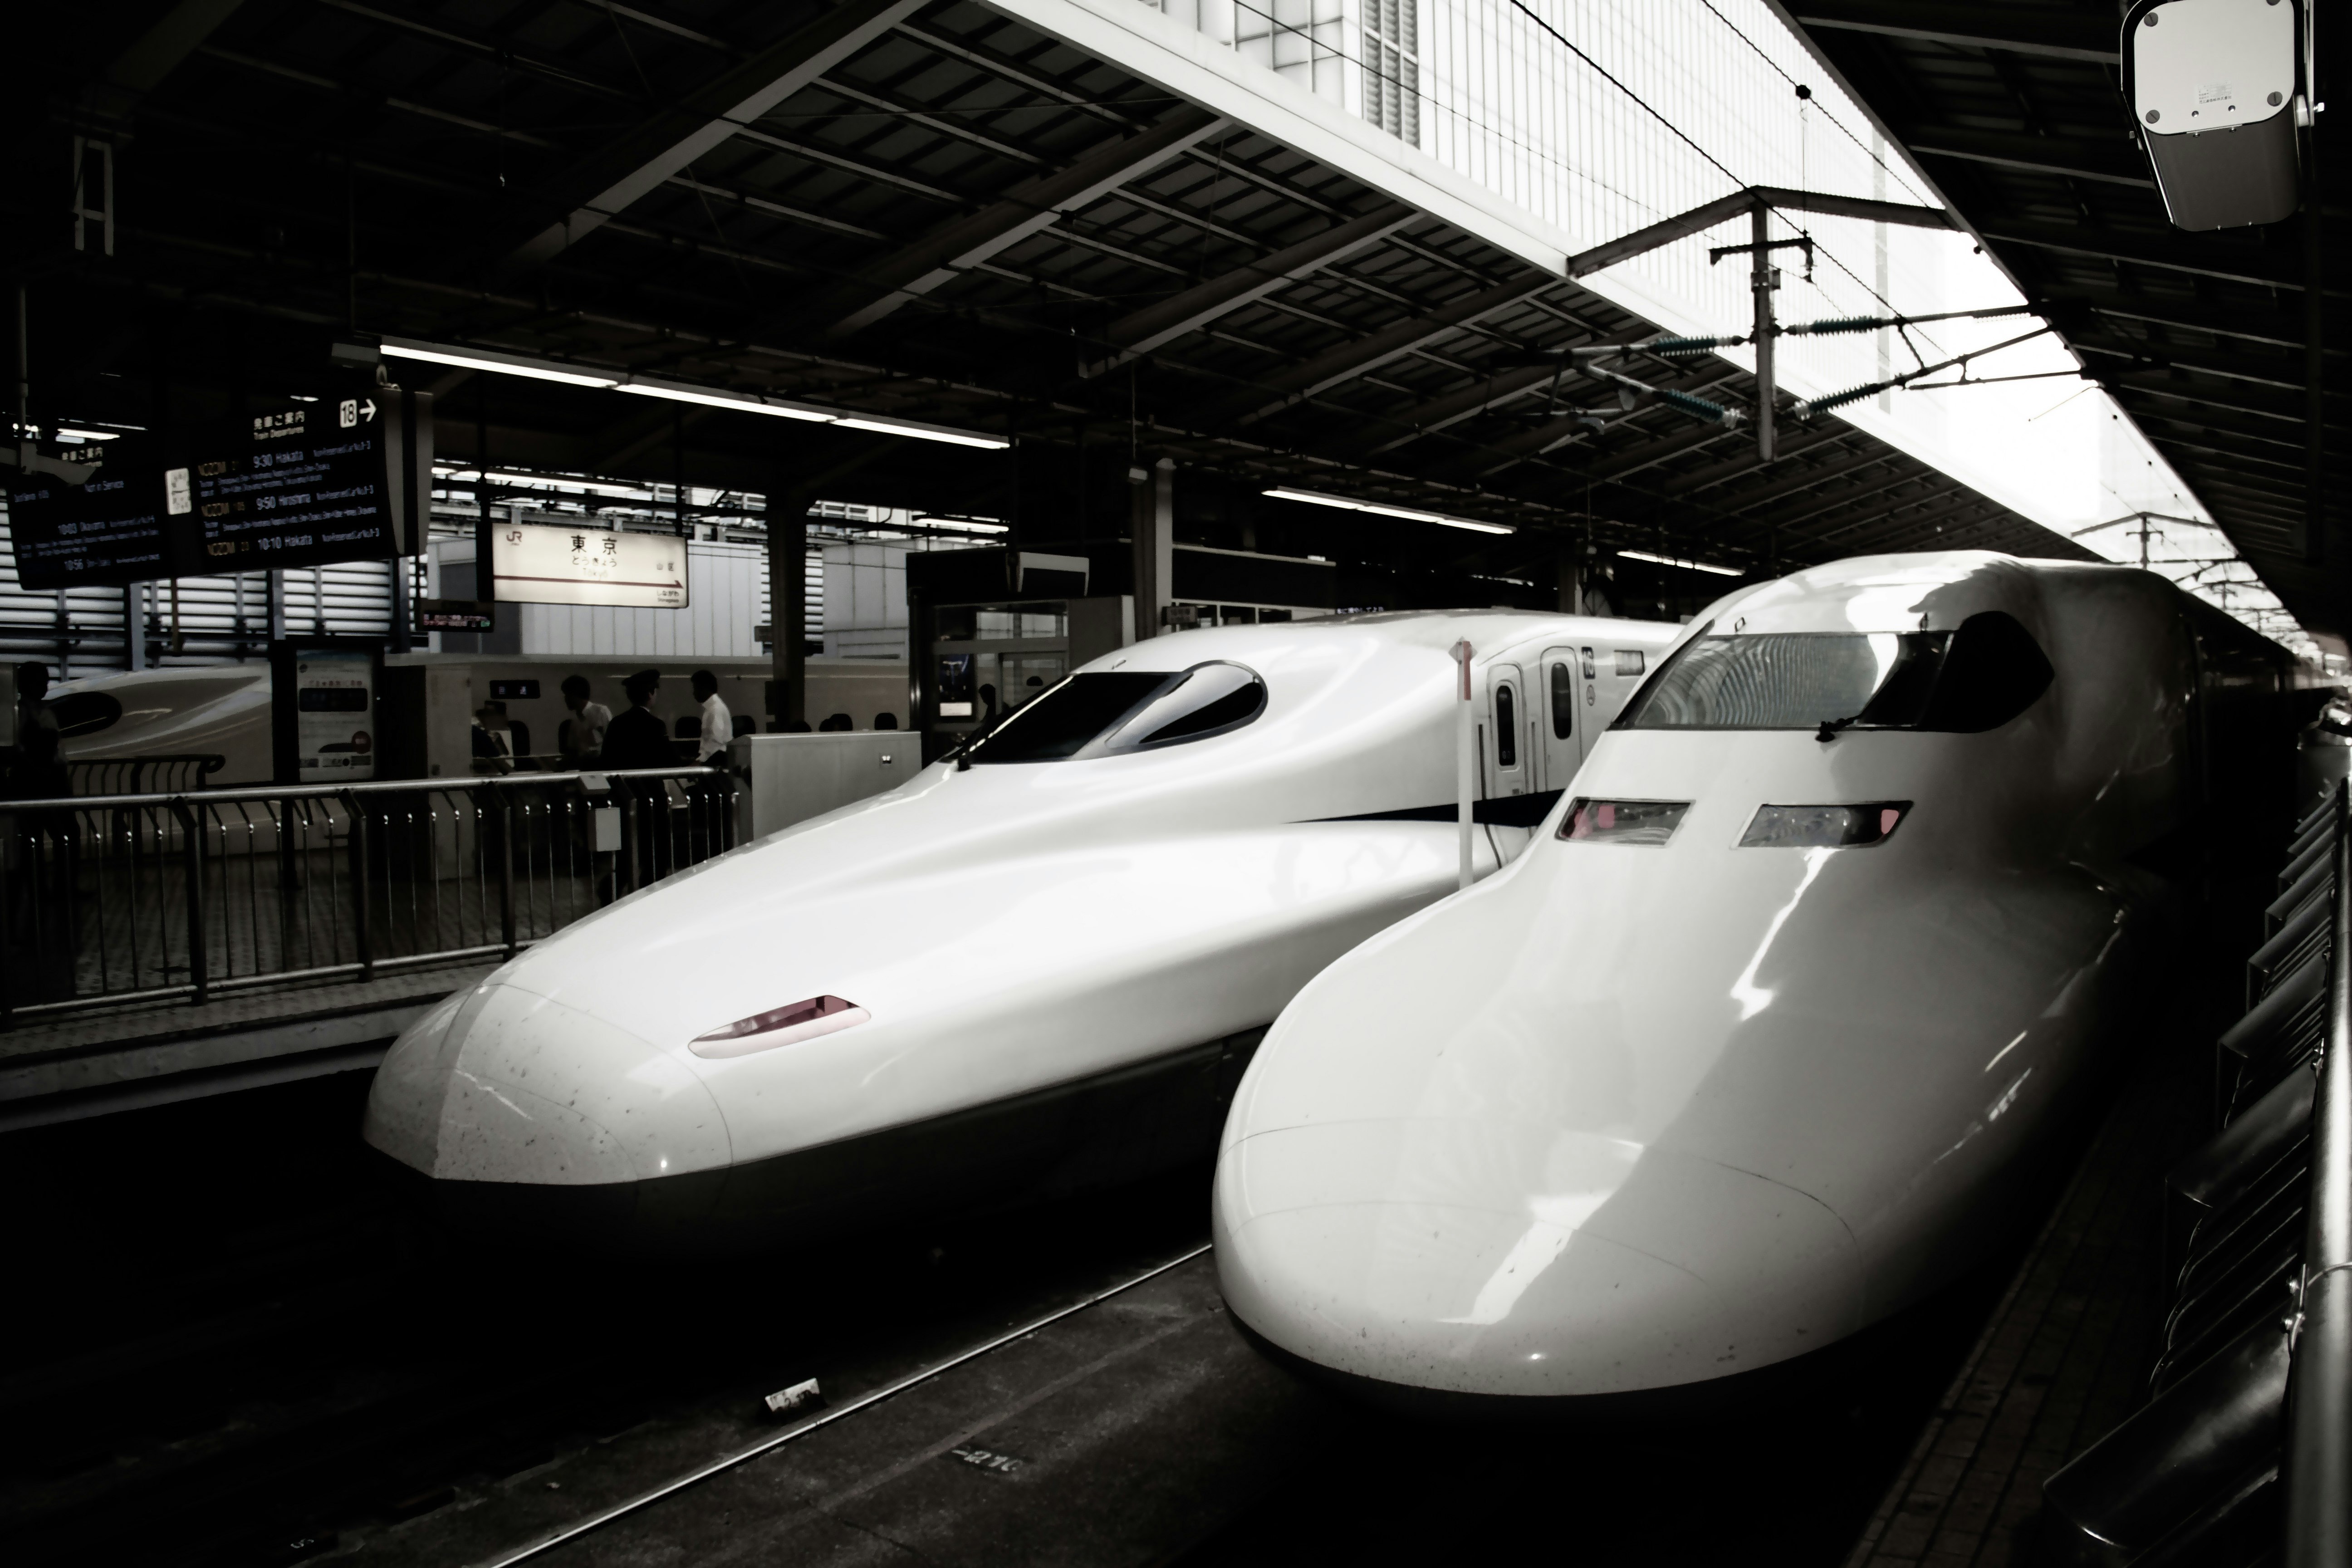 當我坐上從東京到仙台的新幹線時，沒想到日本早就領先好幾十年做出了這樣高速的列車。新幹線等很多日本的技術，還是相當令人驚豔